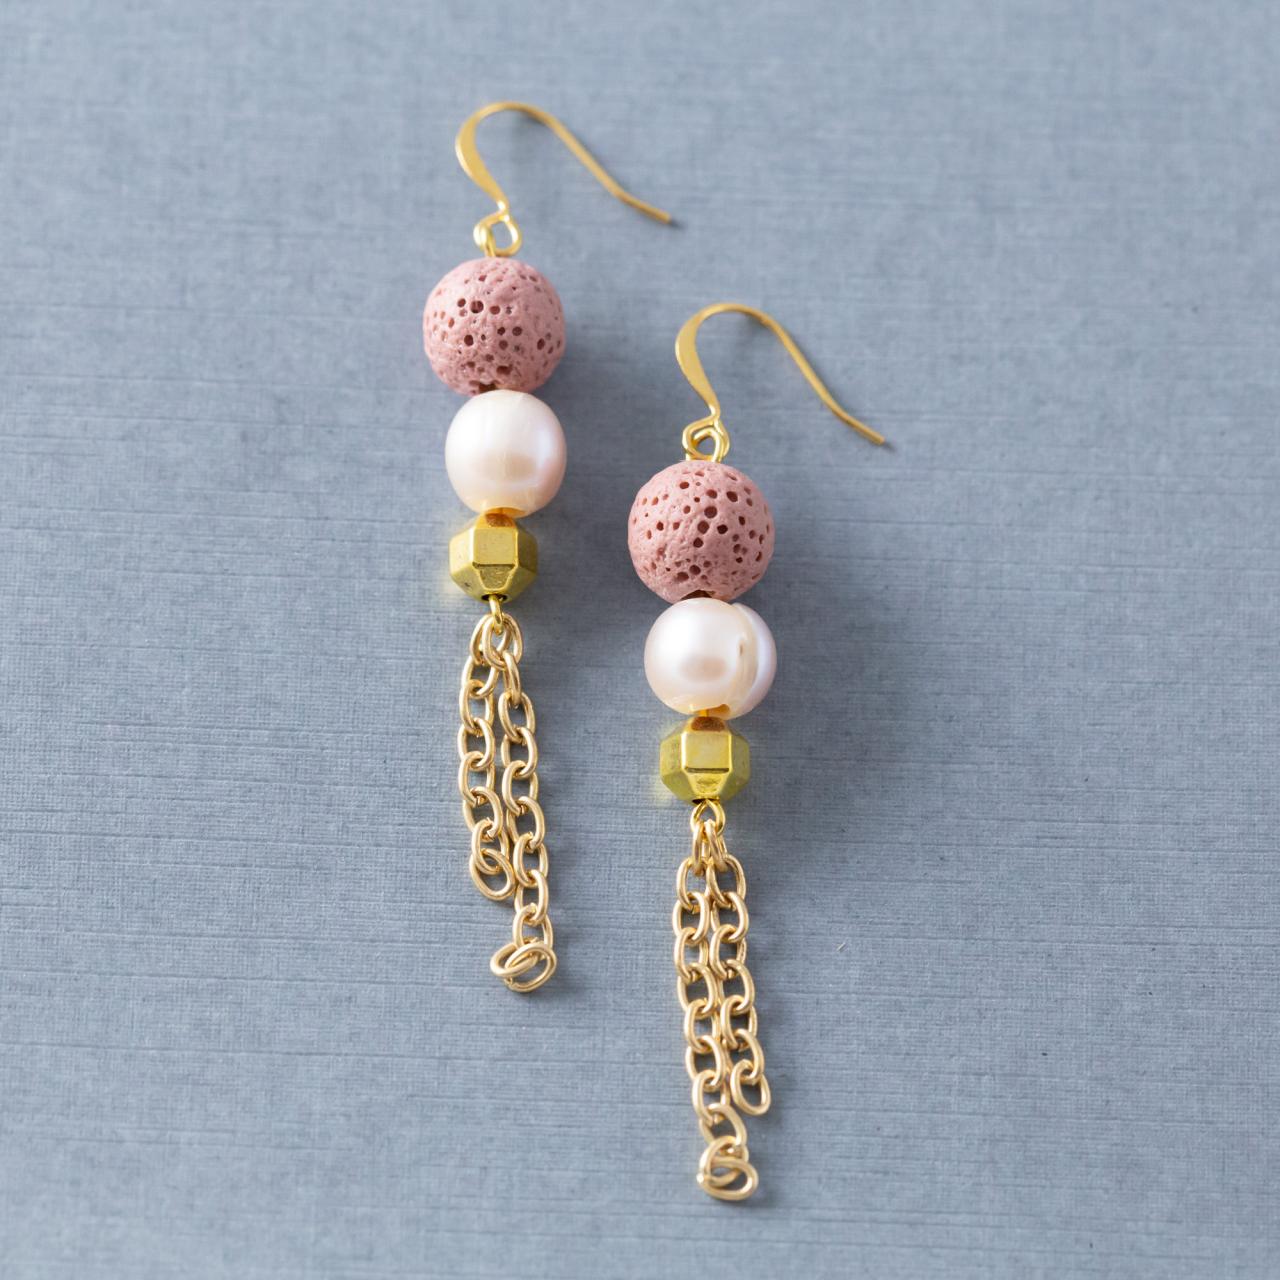 Pink Lava Rock Earrings, Freshwater Pearl Earrings, Gold Chain Tassel Earrings, Boho Chic Jewelry